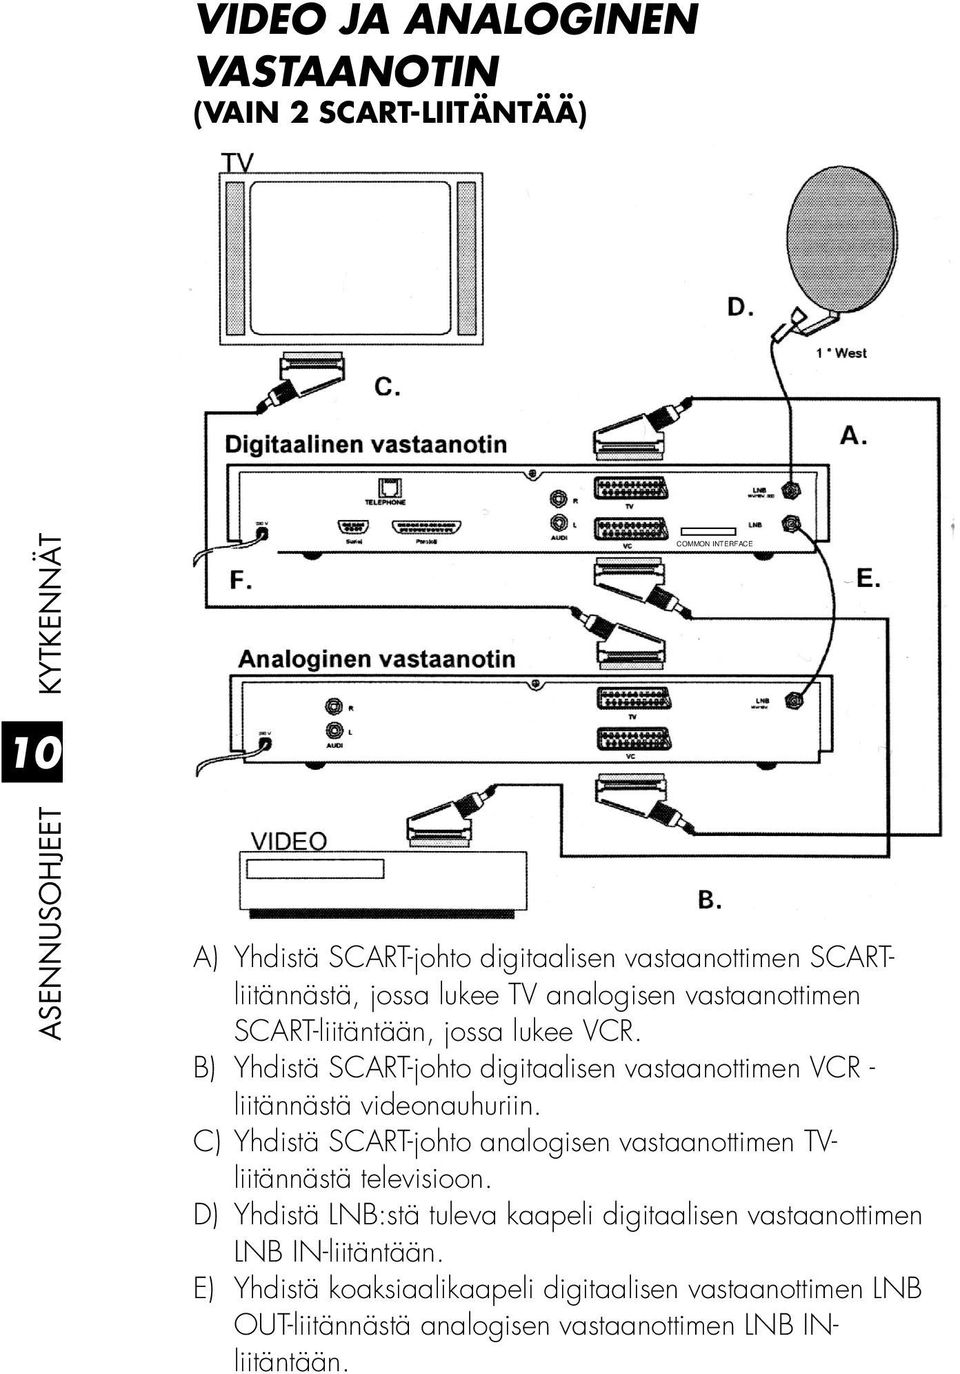 B) Yhdistä SCART-johto digitaalisen vastaanottimen VCR - liitännästä videonauhuriin.